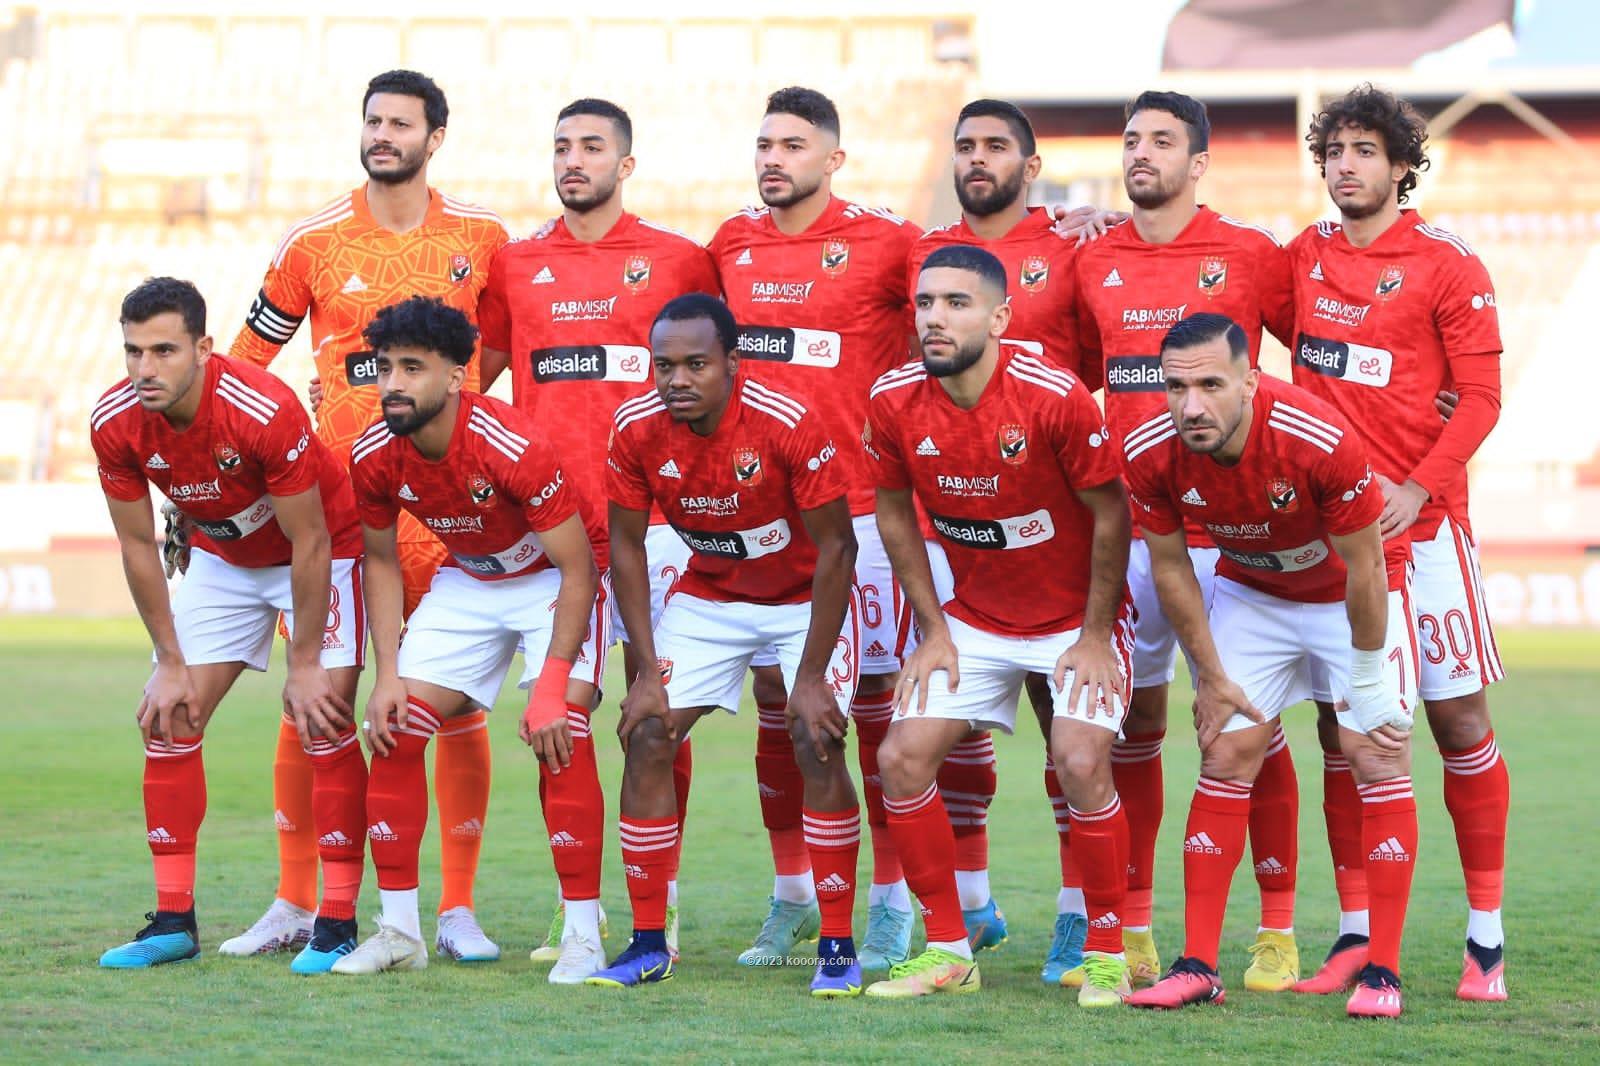 تشكيل الأهلي المتوقع أمام الوداد المغربي في نهائي دوري أبطال أفريقيا